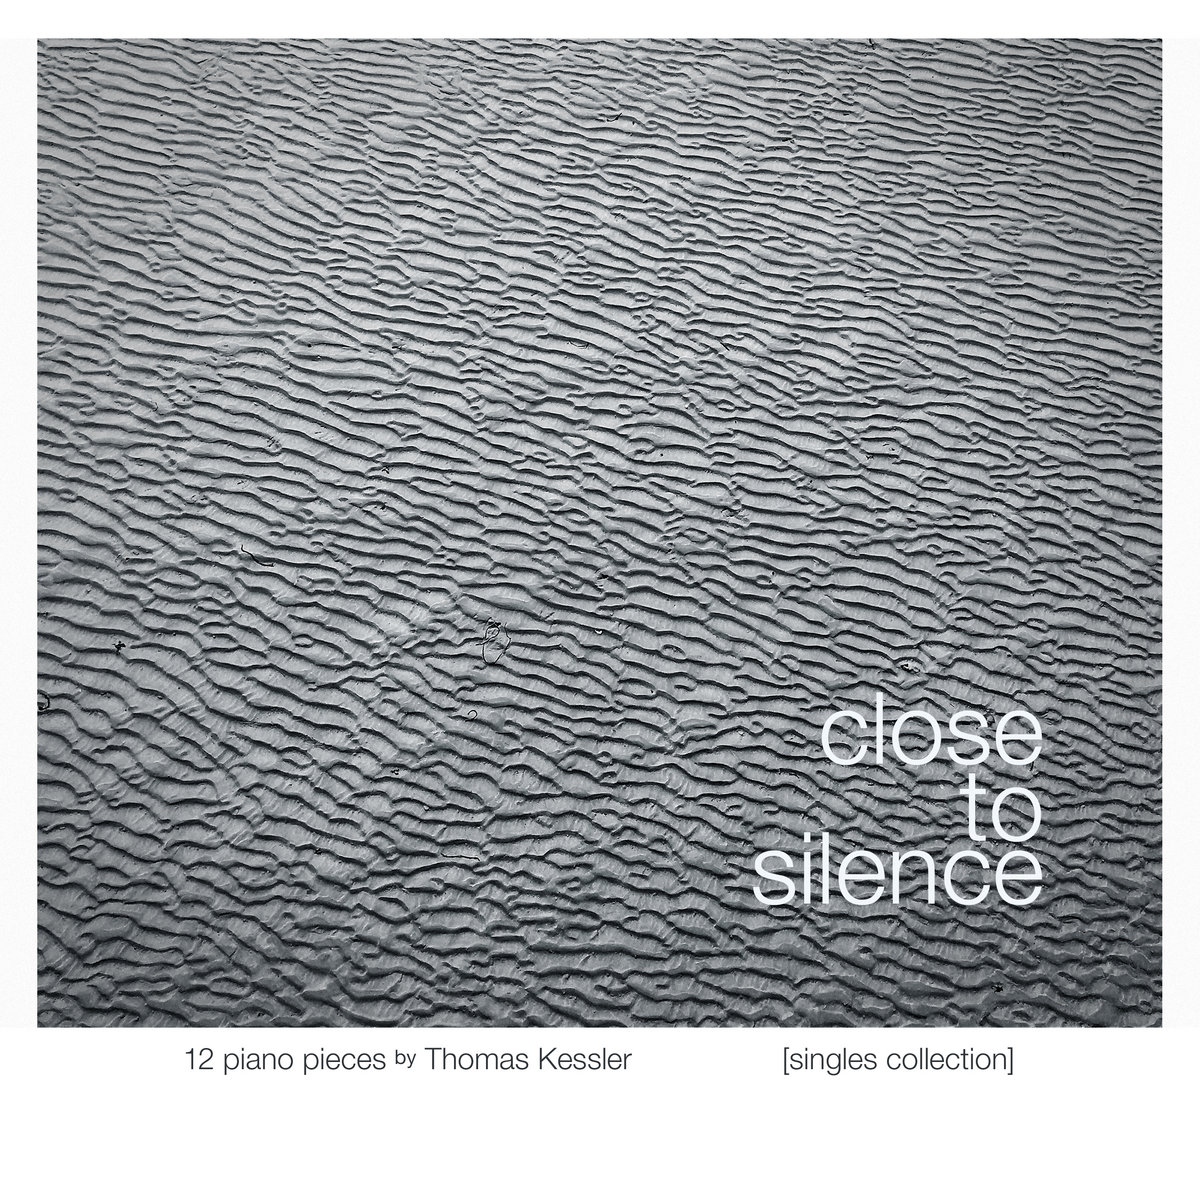 THOMAS KESSLER „CLOSE TO SILENCE”. Recenzja płyty niemieckiego kompozytora